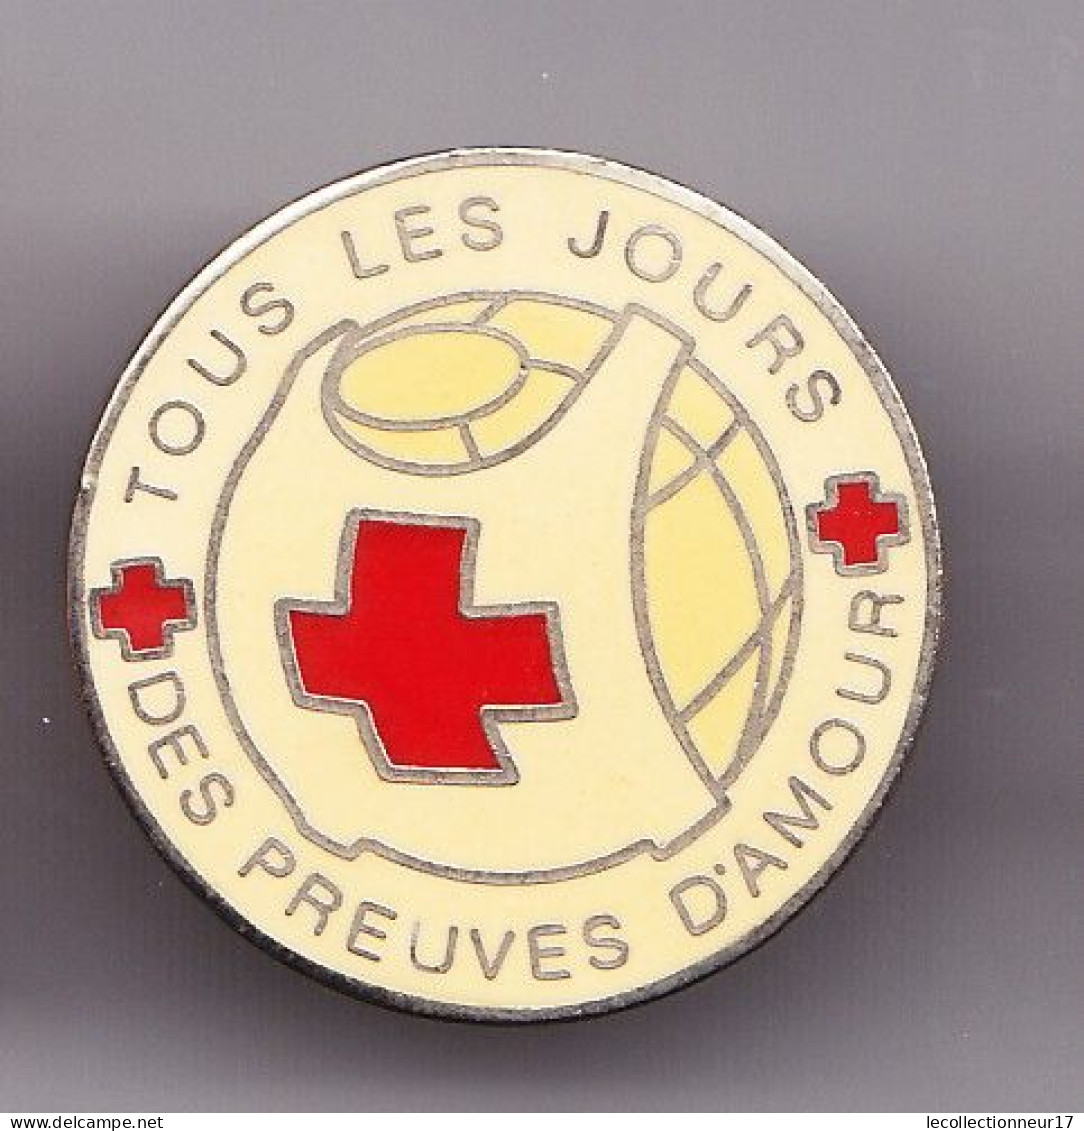 Pin's Croix Rouge Française Tous Les Jours Des Preuves D'amour 7973JL - Medici